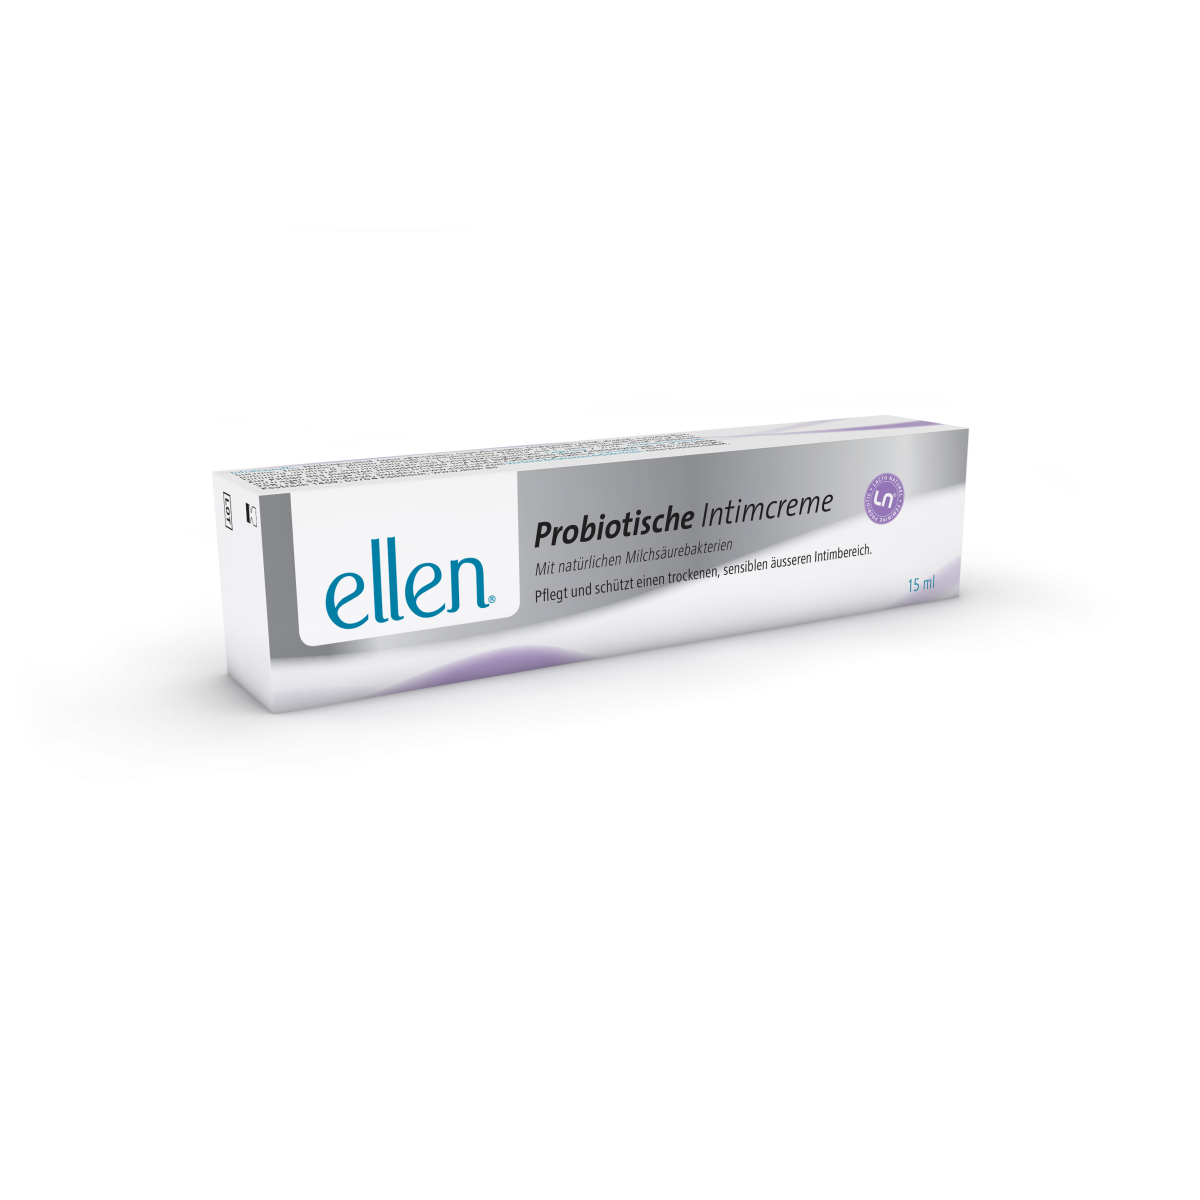 Ellen Intimcreme mit natürlichen Milchsäurebakterien